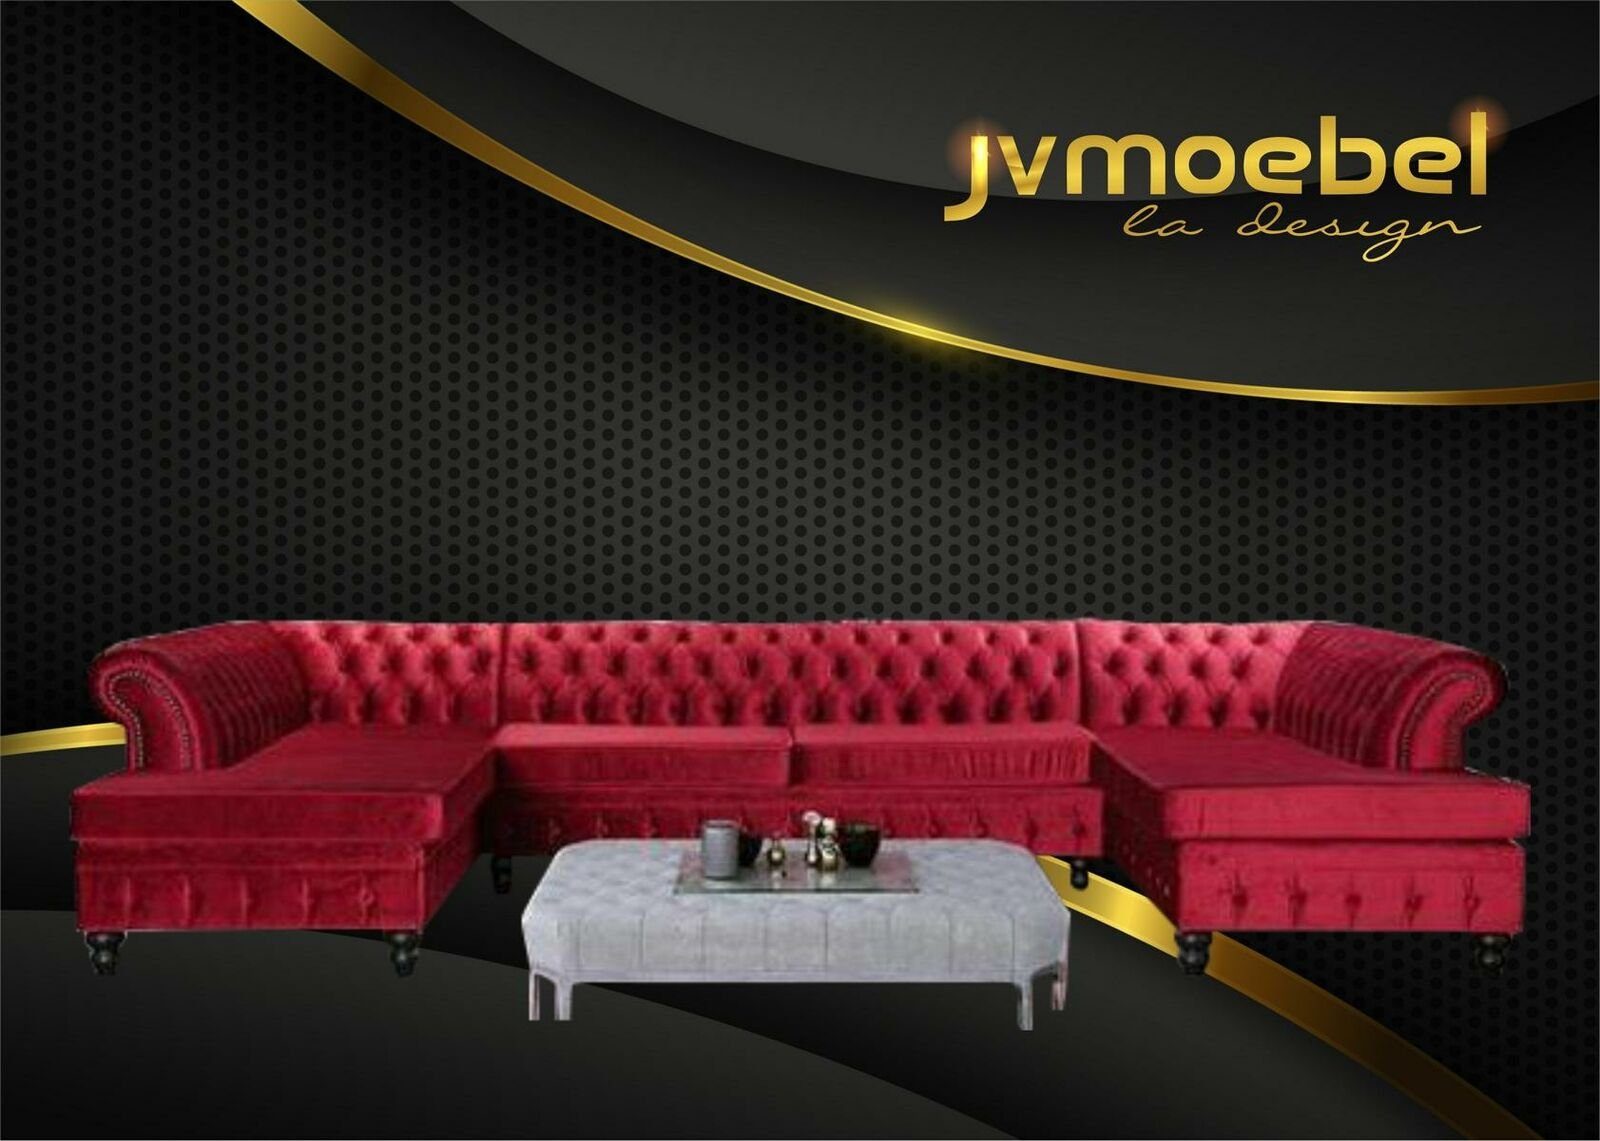 JVmoebel Ecksofa, Set Luxury Modern Ecksofa U-Form Chesterfield und Couchtisch Rot/Hellgrau | Ecksofas